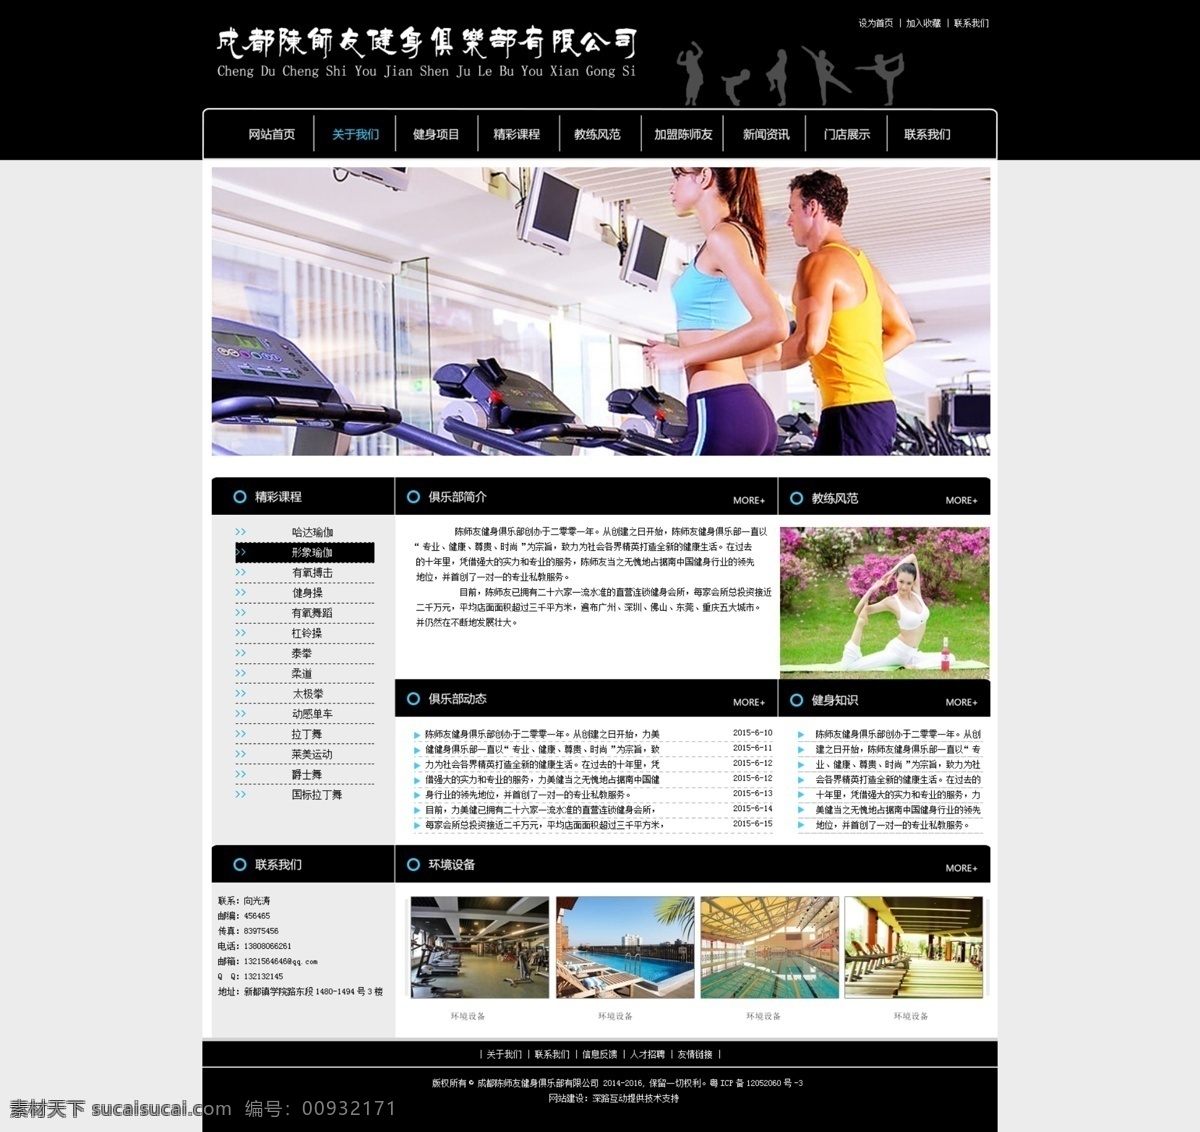 俱乐部首页 俱乐部 网站 首页 网页 web 界面设计 中文模板 白色